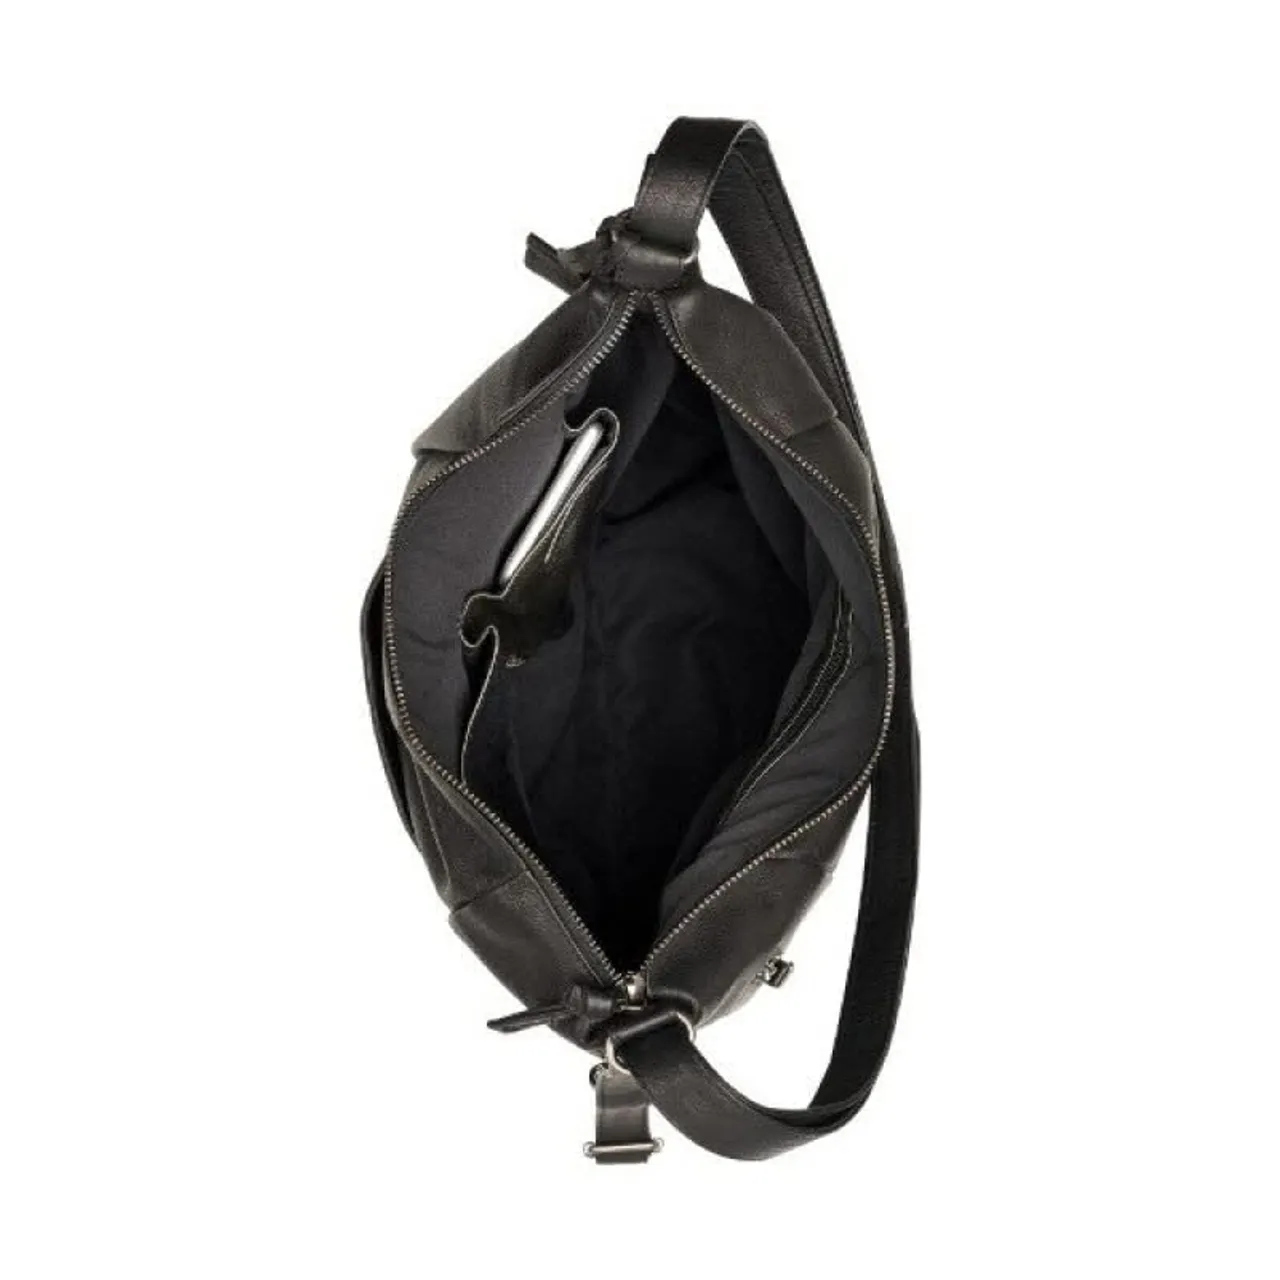 Handtaschen schwarz Beutel One Size